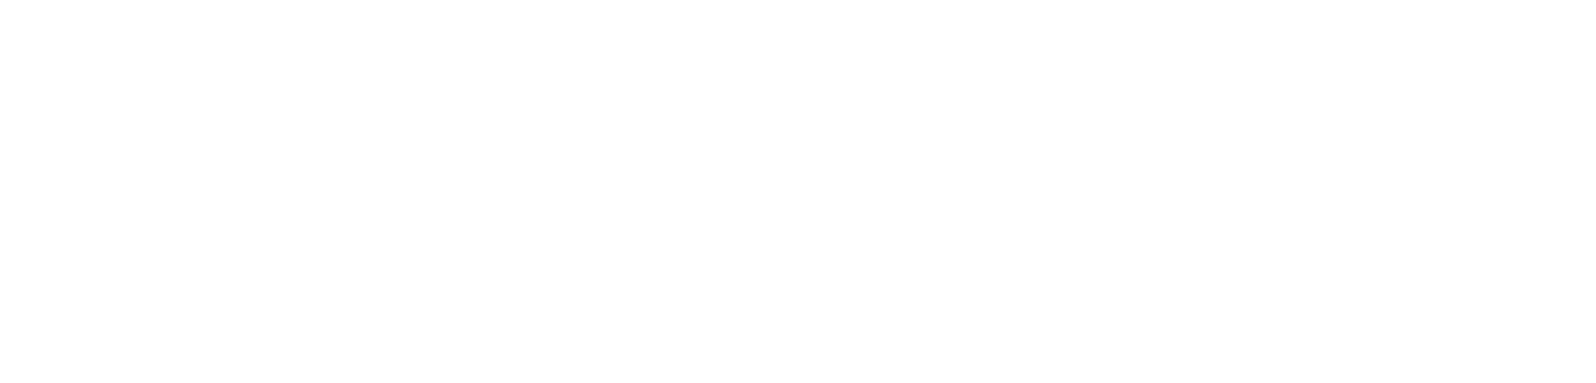 Logo - Beta College white logo-01